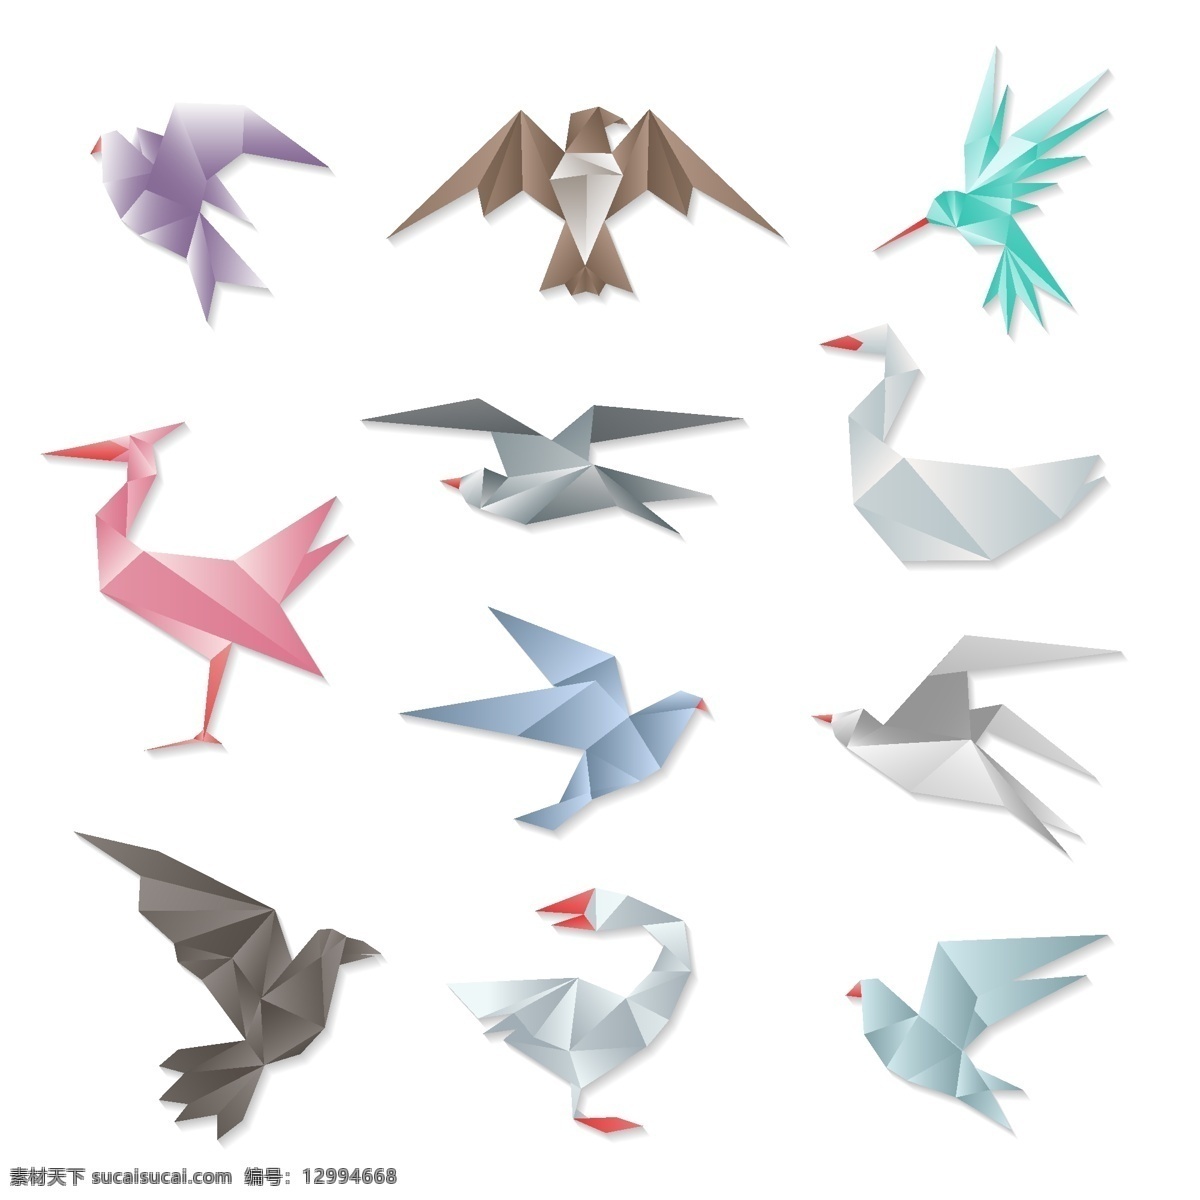 款 鸟类 logo 鸟类logo 鸟 折纸logo 鸟类折纸 矢量素材 鸟类矢量素材 原创 标志图标 其他图标